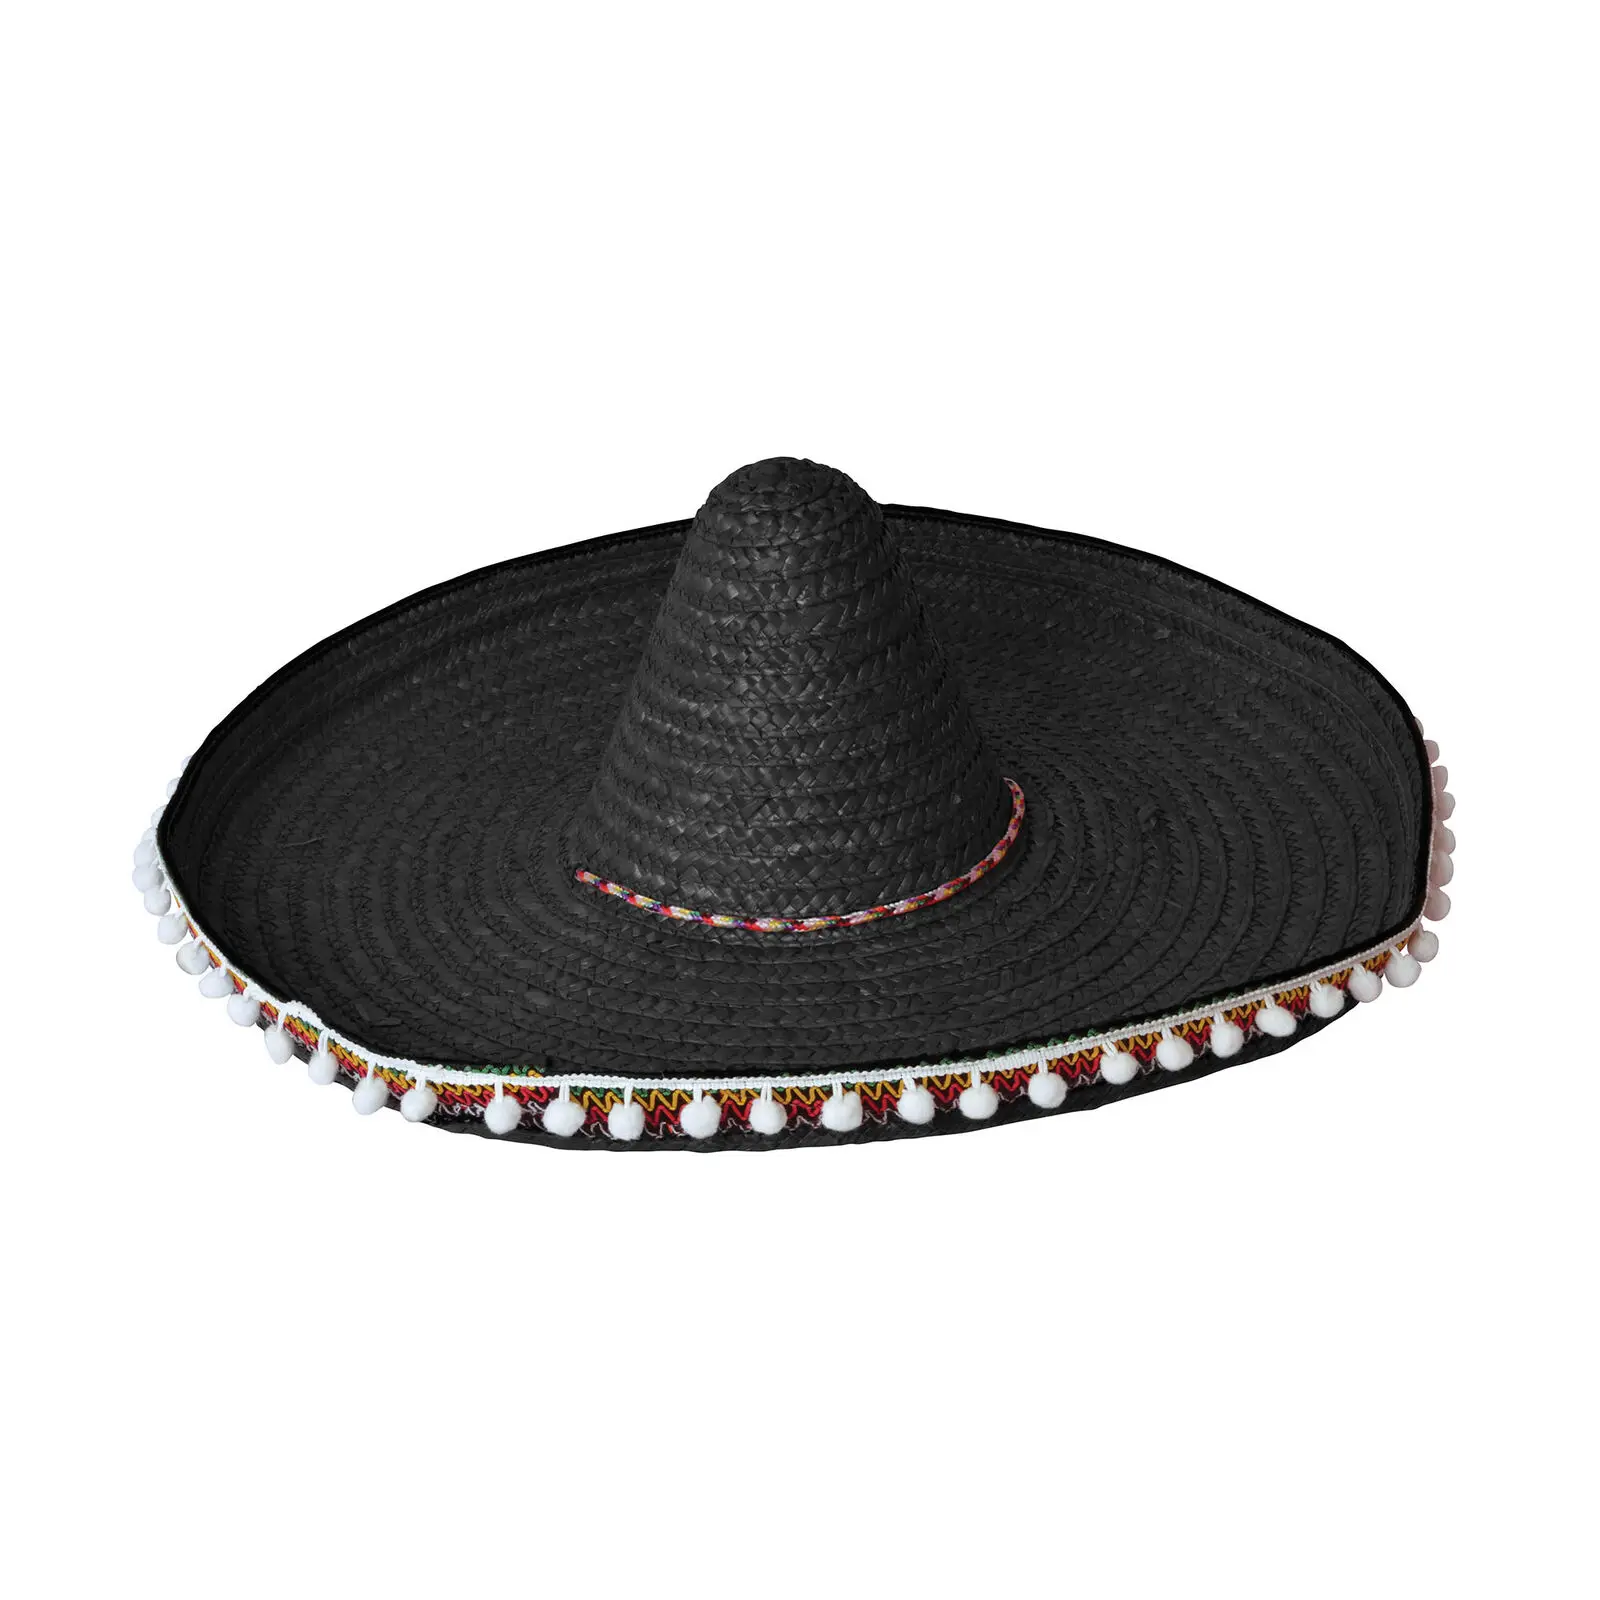 ฟาง Sombrero 60 ซม. สีดำเม็กซิโกเม็กซิกัน Wild West คาวบอยหมวก Bandit แฟนซีชุด A1556